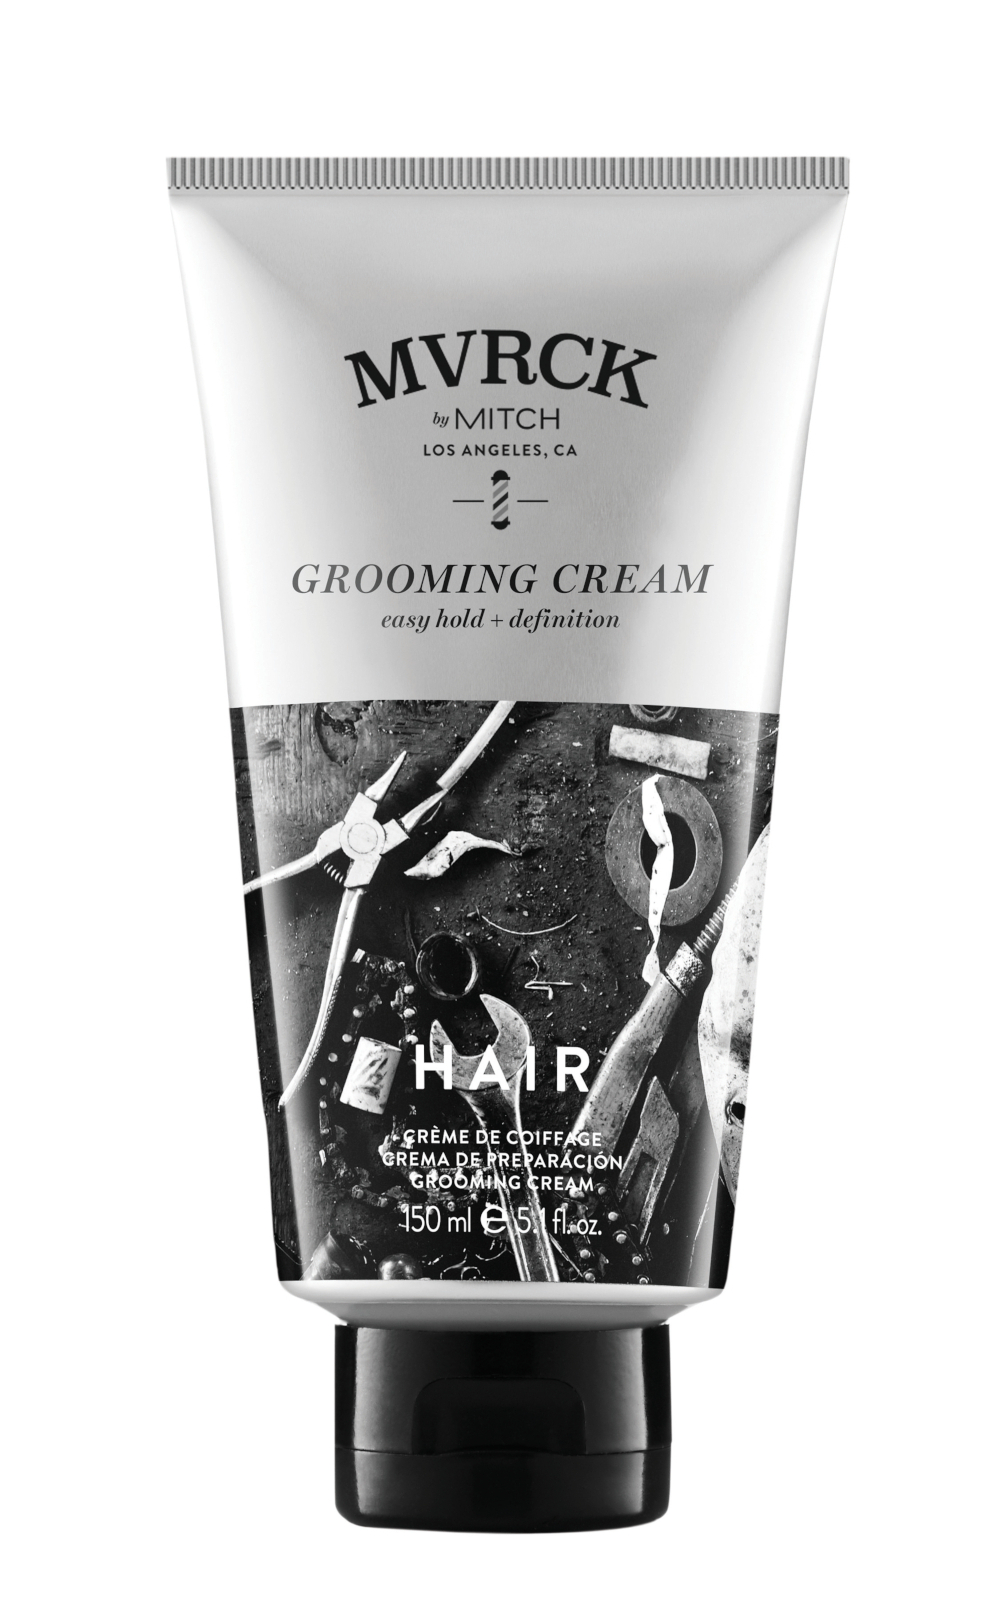 Stylingový krém na vlasy Paul Mitchell Maverick by MITCH® - 150 ml (330521) + DÁREK ZDARMA